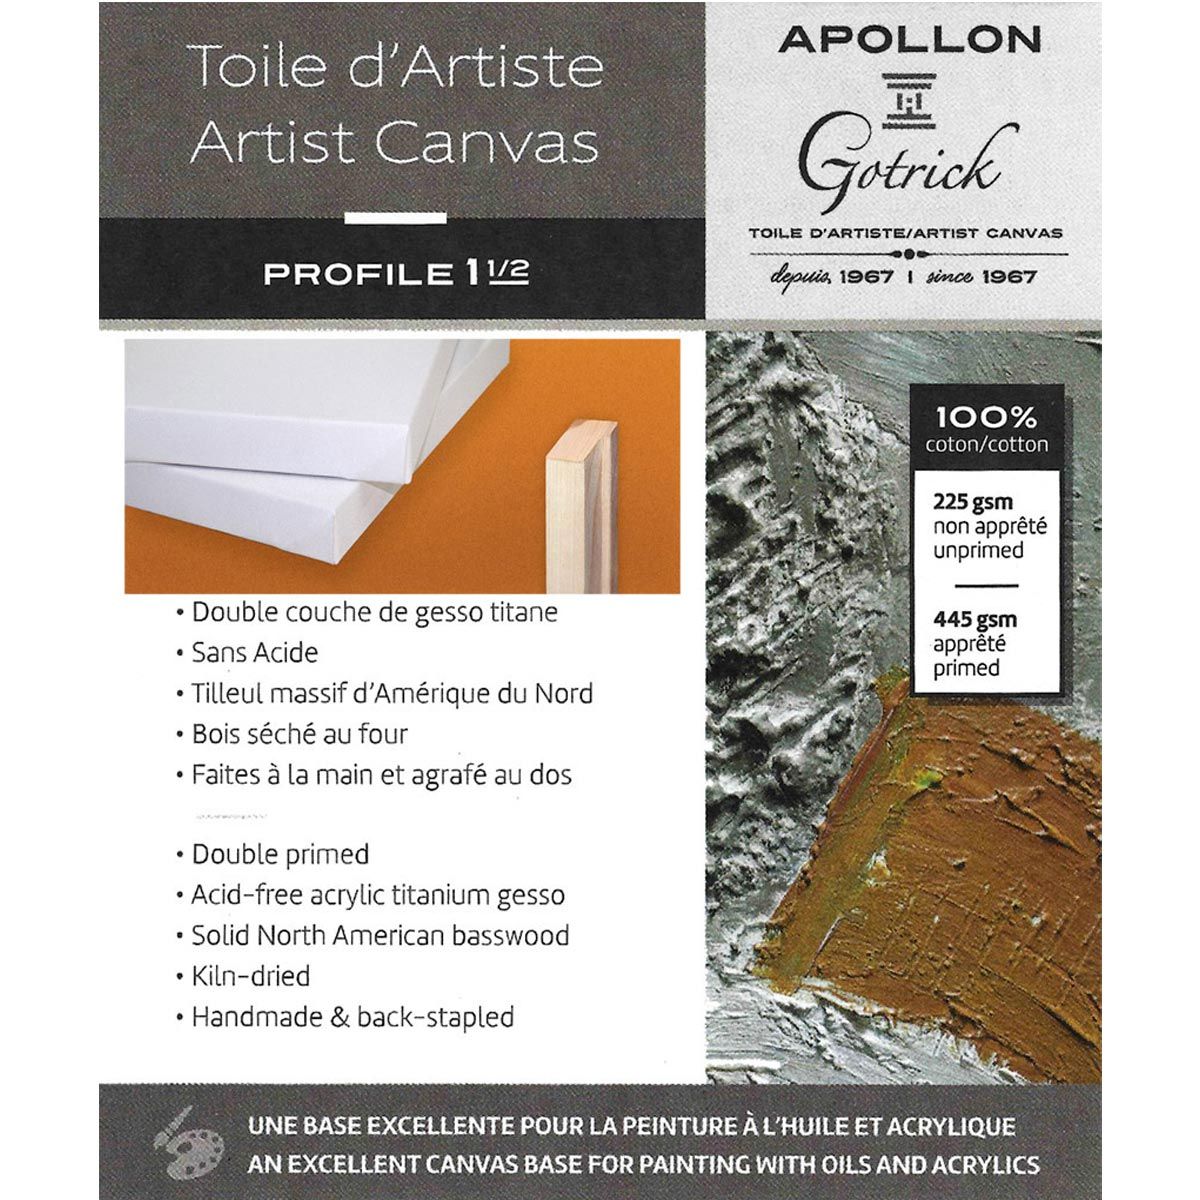 Apollon Gotrick Gallery Artist Canvas Profile 1½" - 11" x 14"